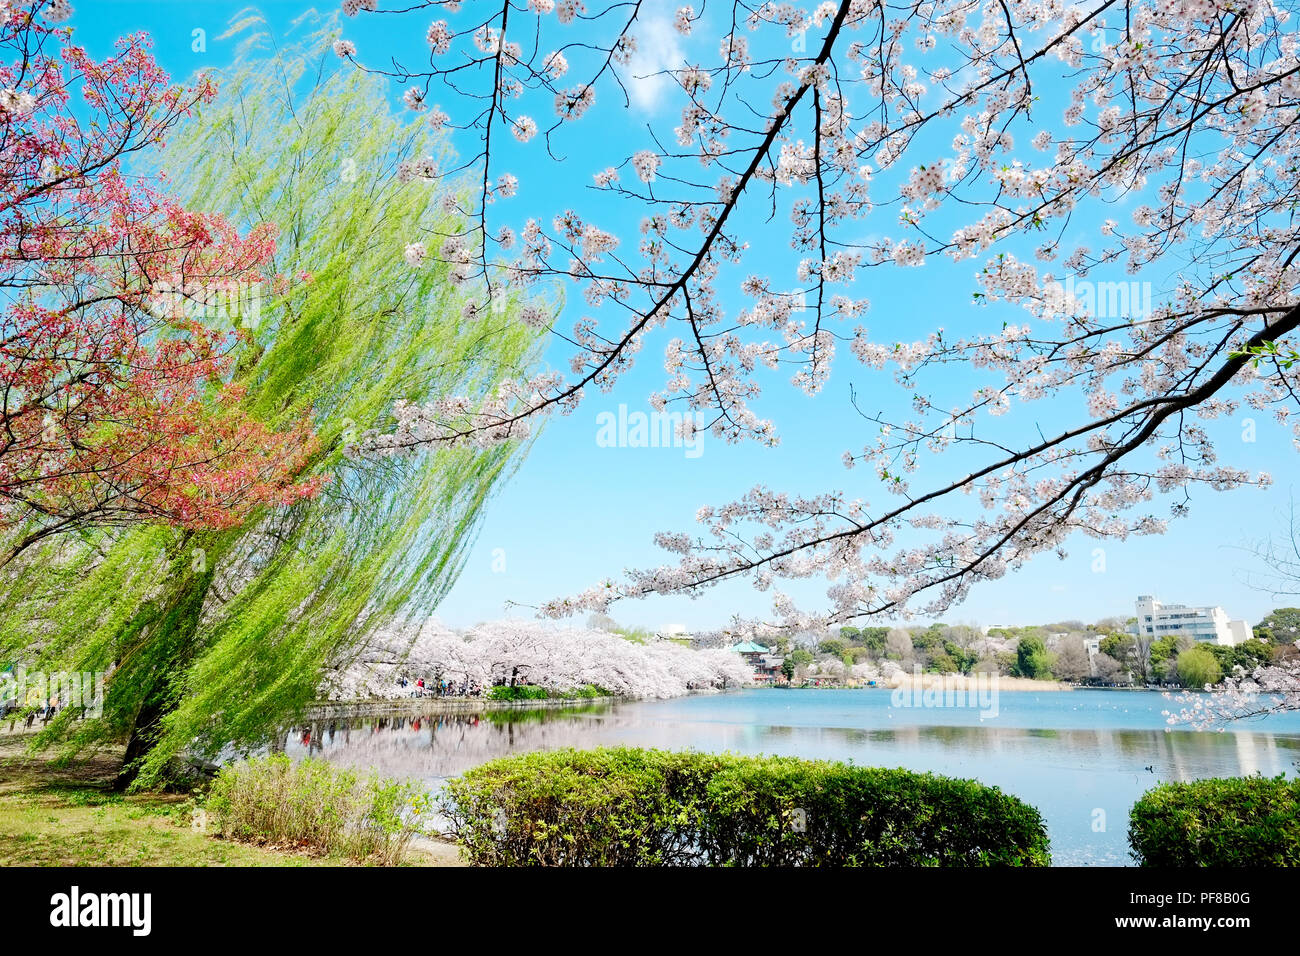 Hermoso paisaje con hoja roja, verde sauce, blossom sakura, claro estanque y brillante cielo azul intensos en primavera temporada de flor de cerezo, Tokio, Japón Foto de stock